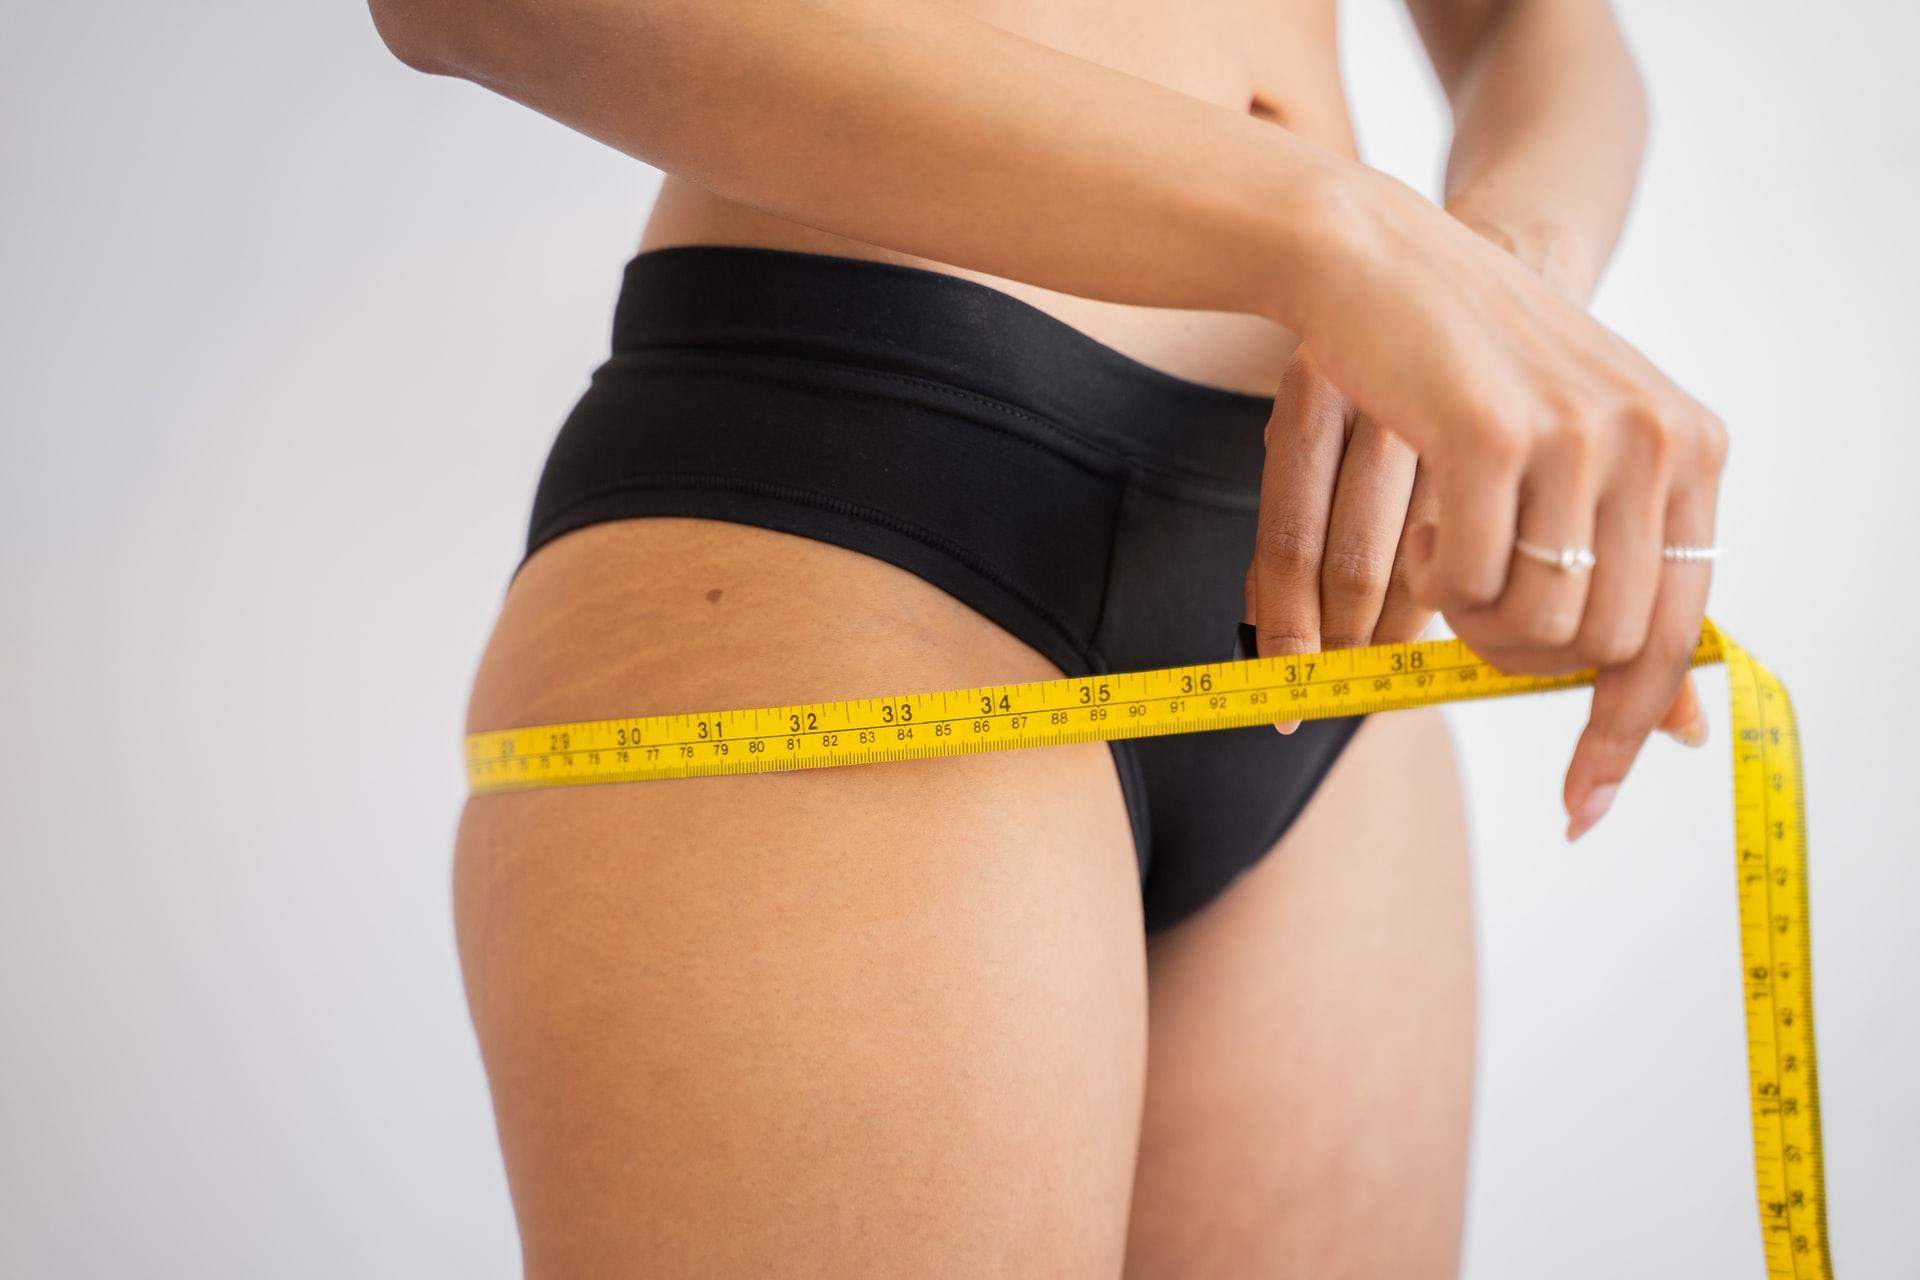 Чтобы похудеть, расчет суточной нормы калорий должно происходить индивидуально